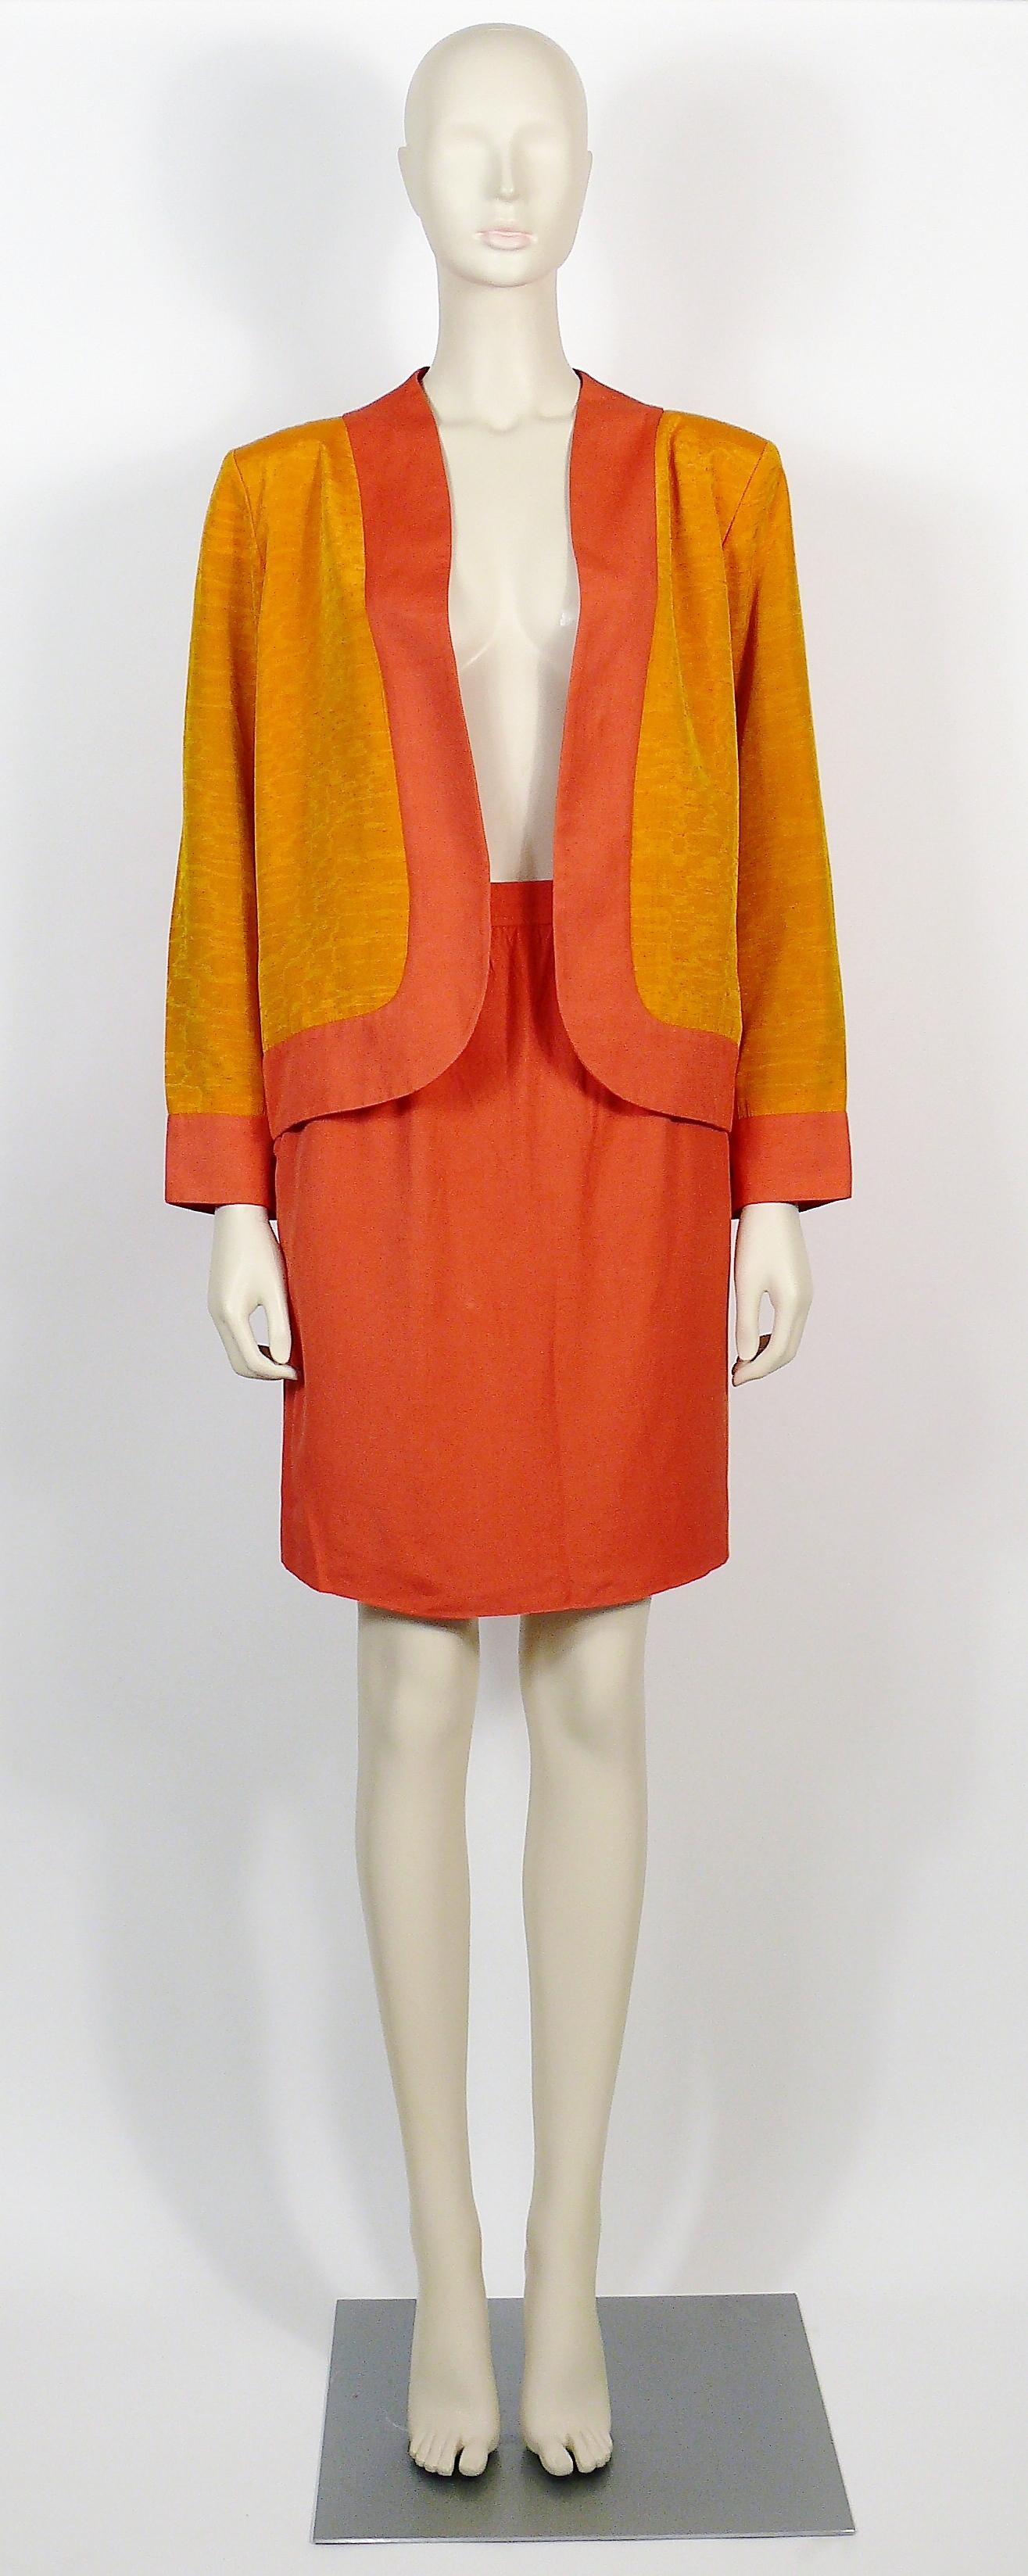 Women's Yves Saint Laurent YSL Oriental Inspired Jacket and Skirt Ensemble For Sale